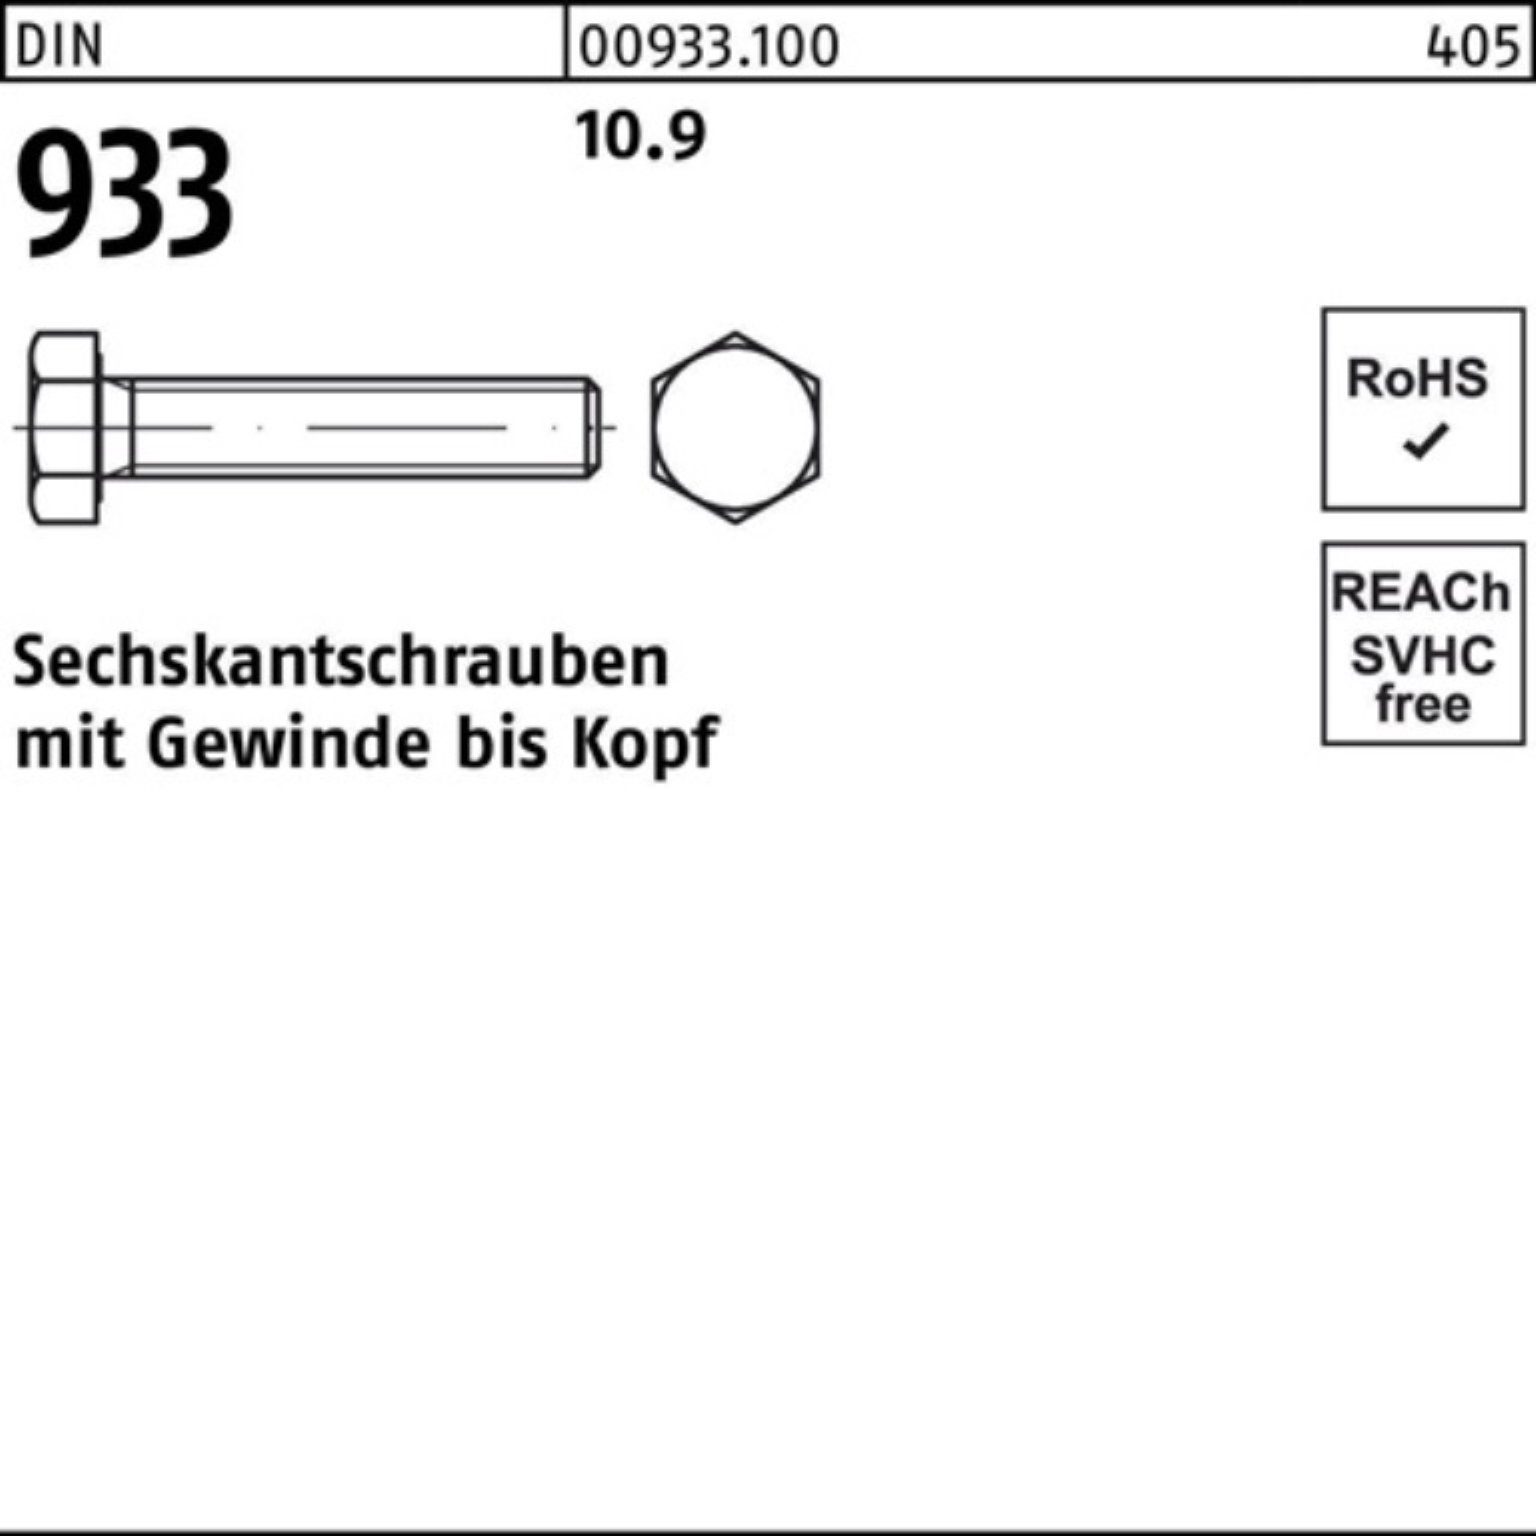 Reyher Sechskantschraube 100er Pack 1 Sechskantschraube 933 DIN Stück M30x 180 933 10.9 DIN VG